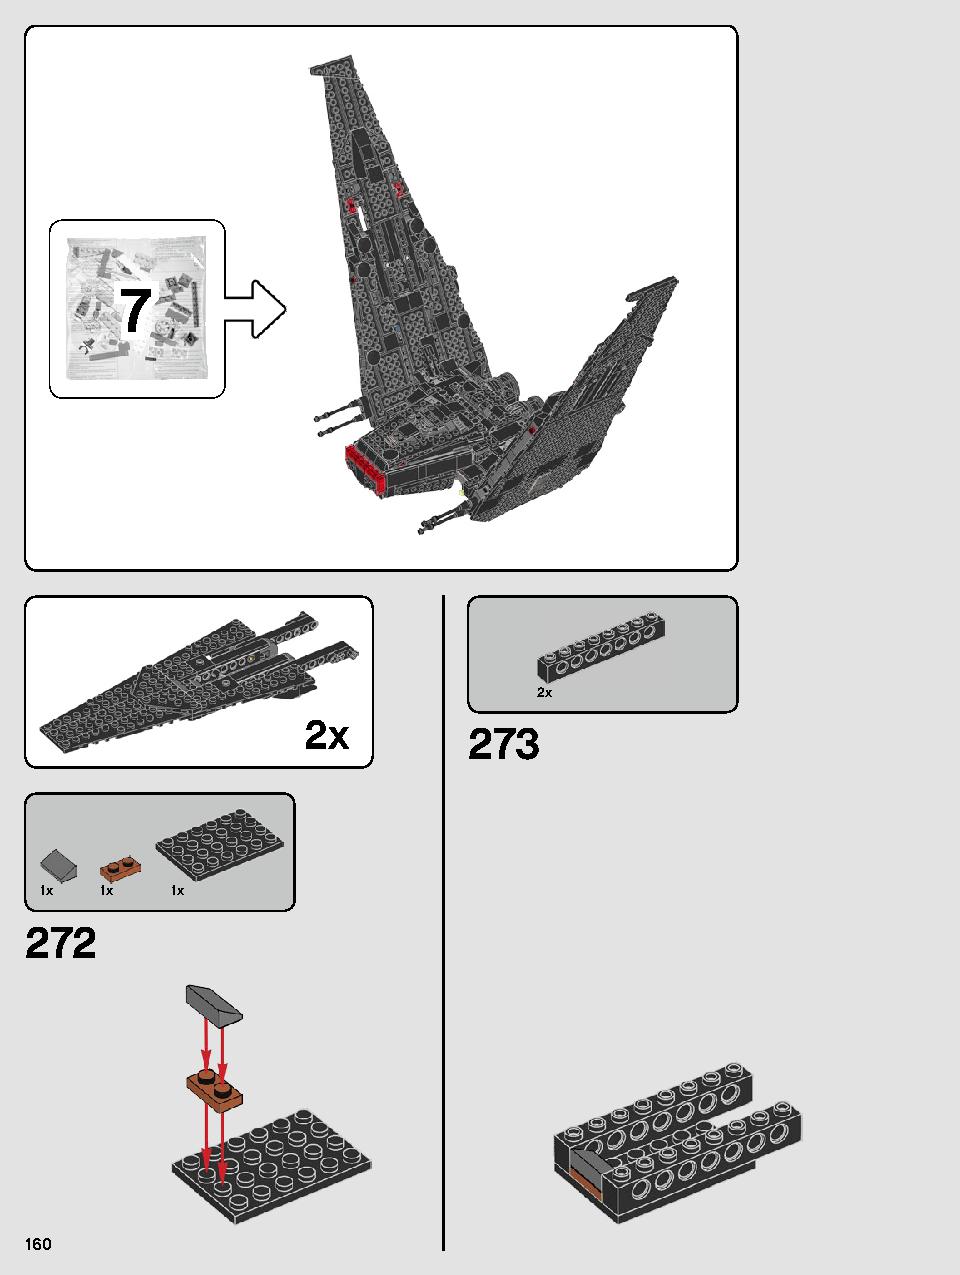 스타워즈 카일로 렌의 셔틀™ 75256 레고 세트 제품정보 레고 조립설명서 160 page